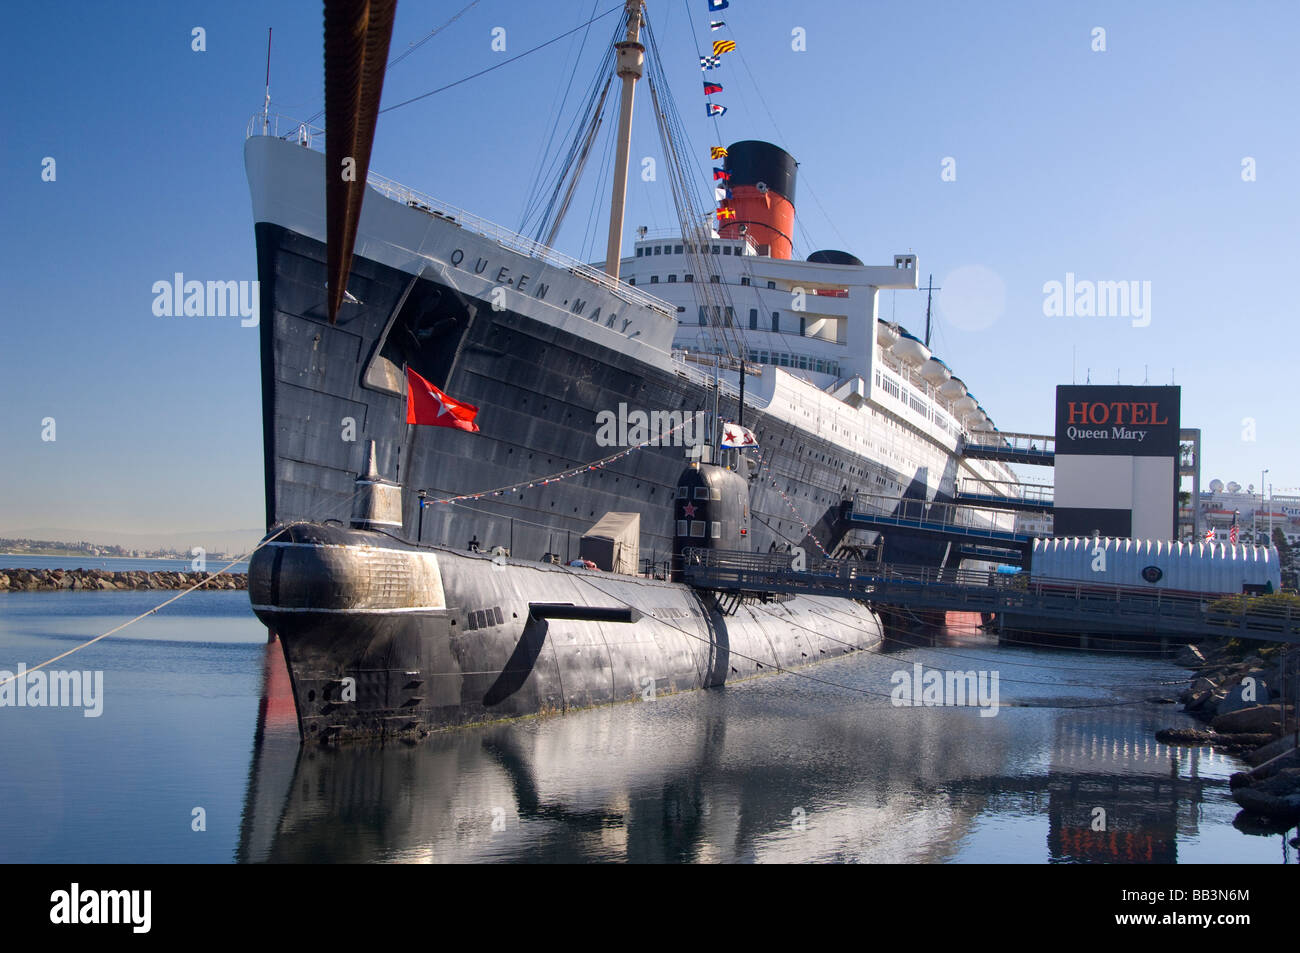 California, Long Beach, Queen Mary. Historic cruise ship permanently